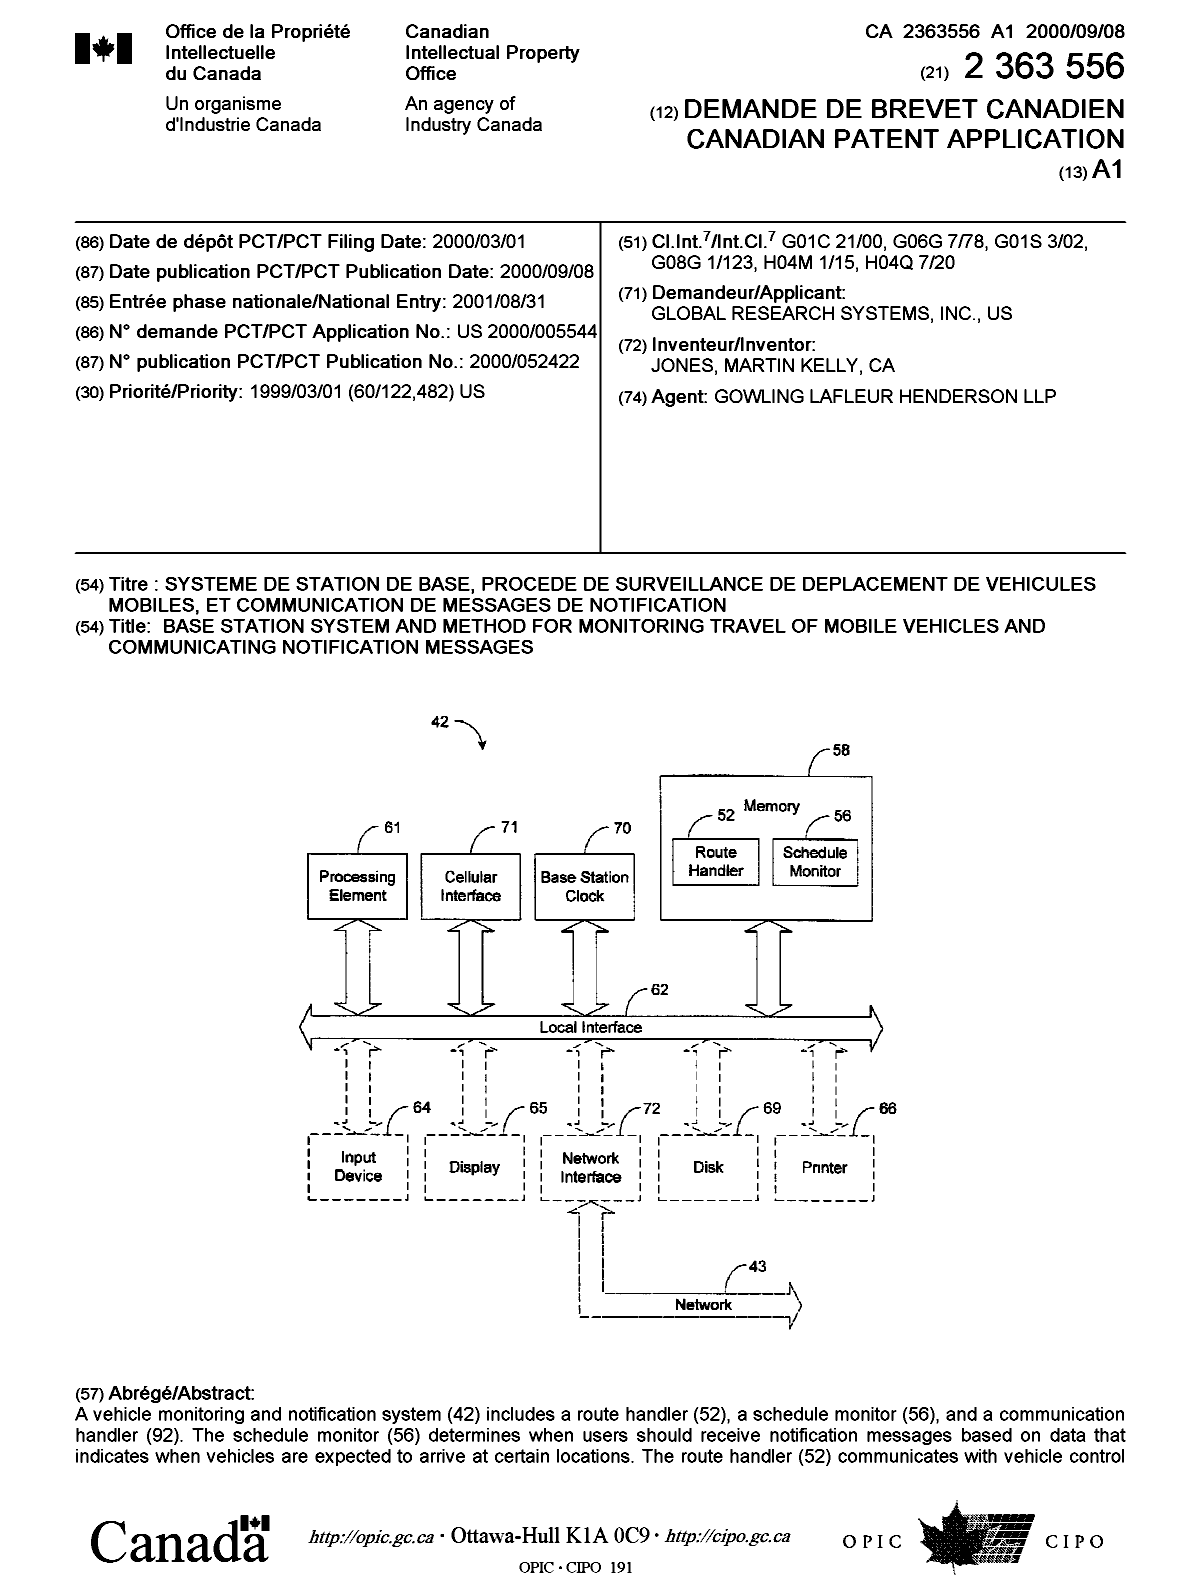 Document de brevet canadien 2363556. Page couverture 20020503. Image 1 de 2